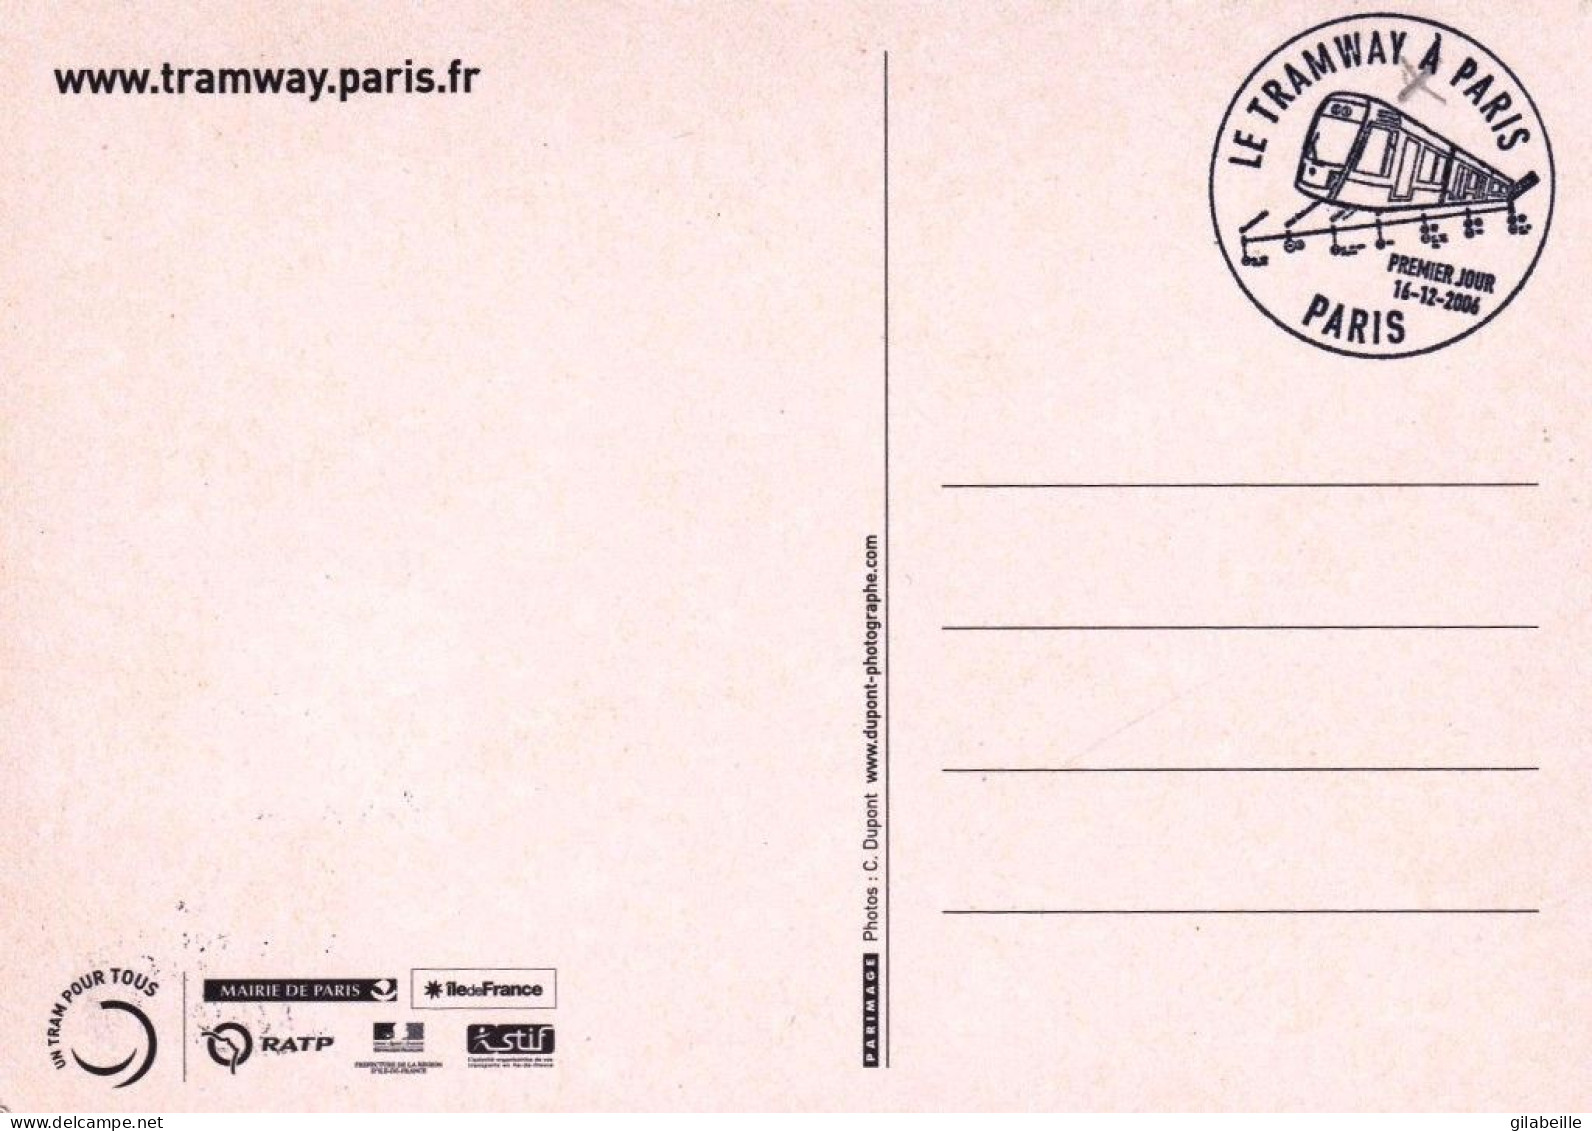 75 - PARIS  - Il Est La !! - Le Tramway A PARIS - Cachet Commemoratif - RATP - Transporte Público